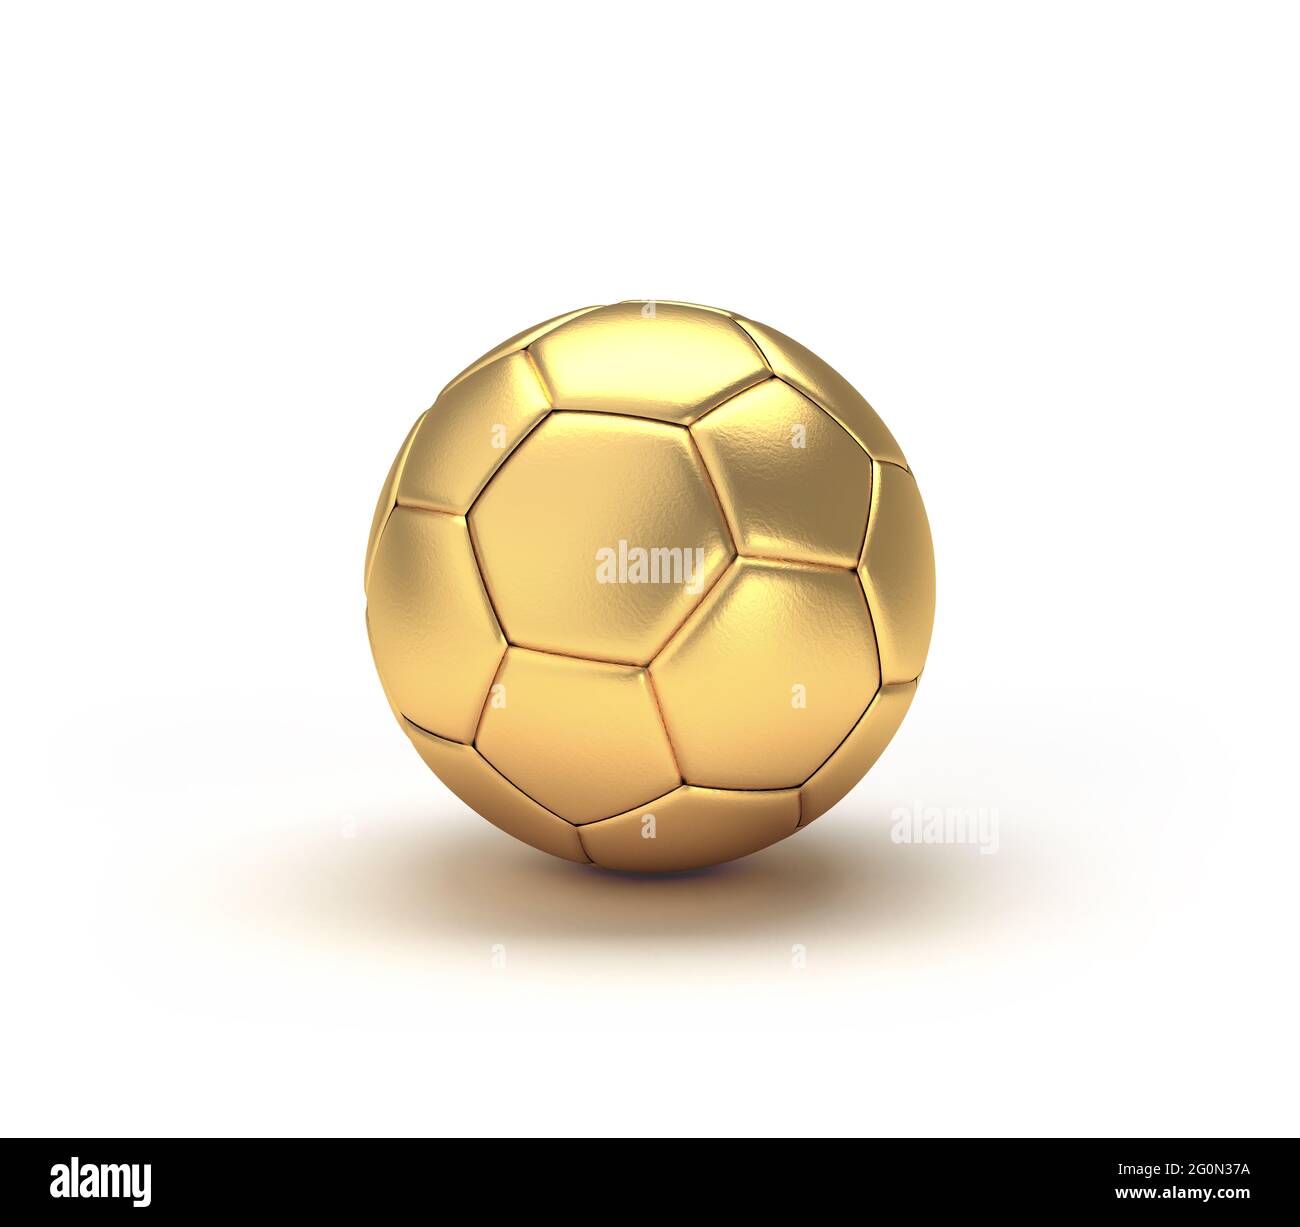 Sfera di calcio d'oro isolata su sfondo bianco. Illustrazione 3D. Foto Stock